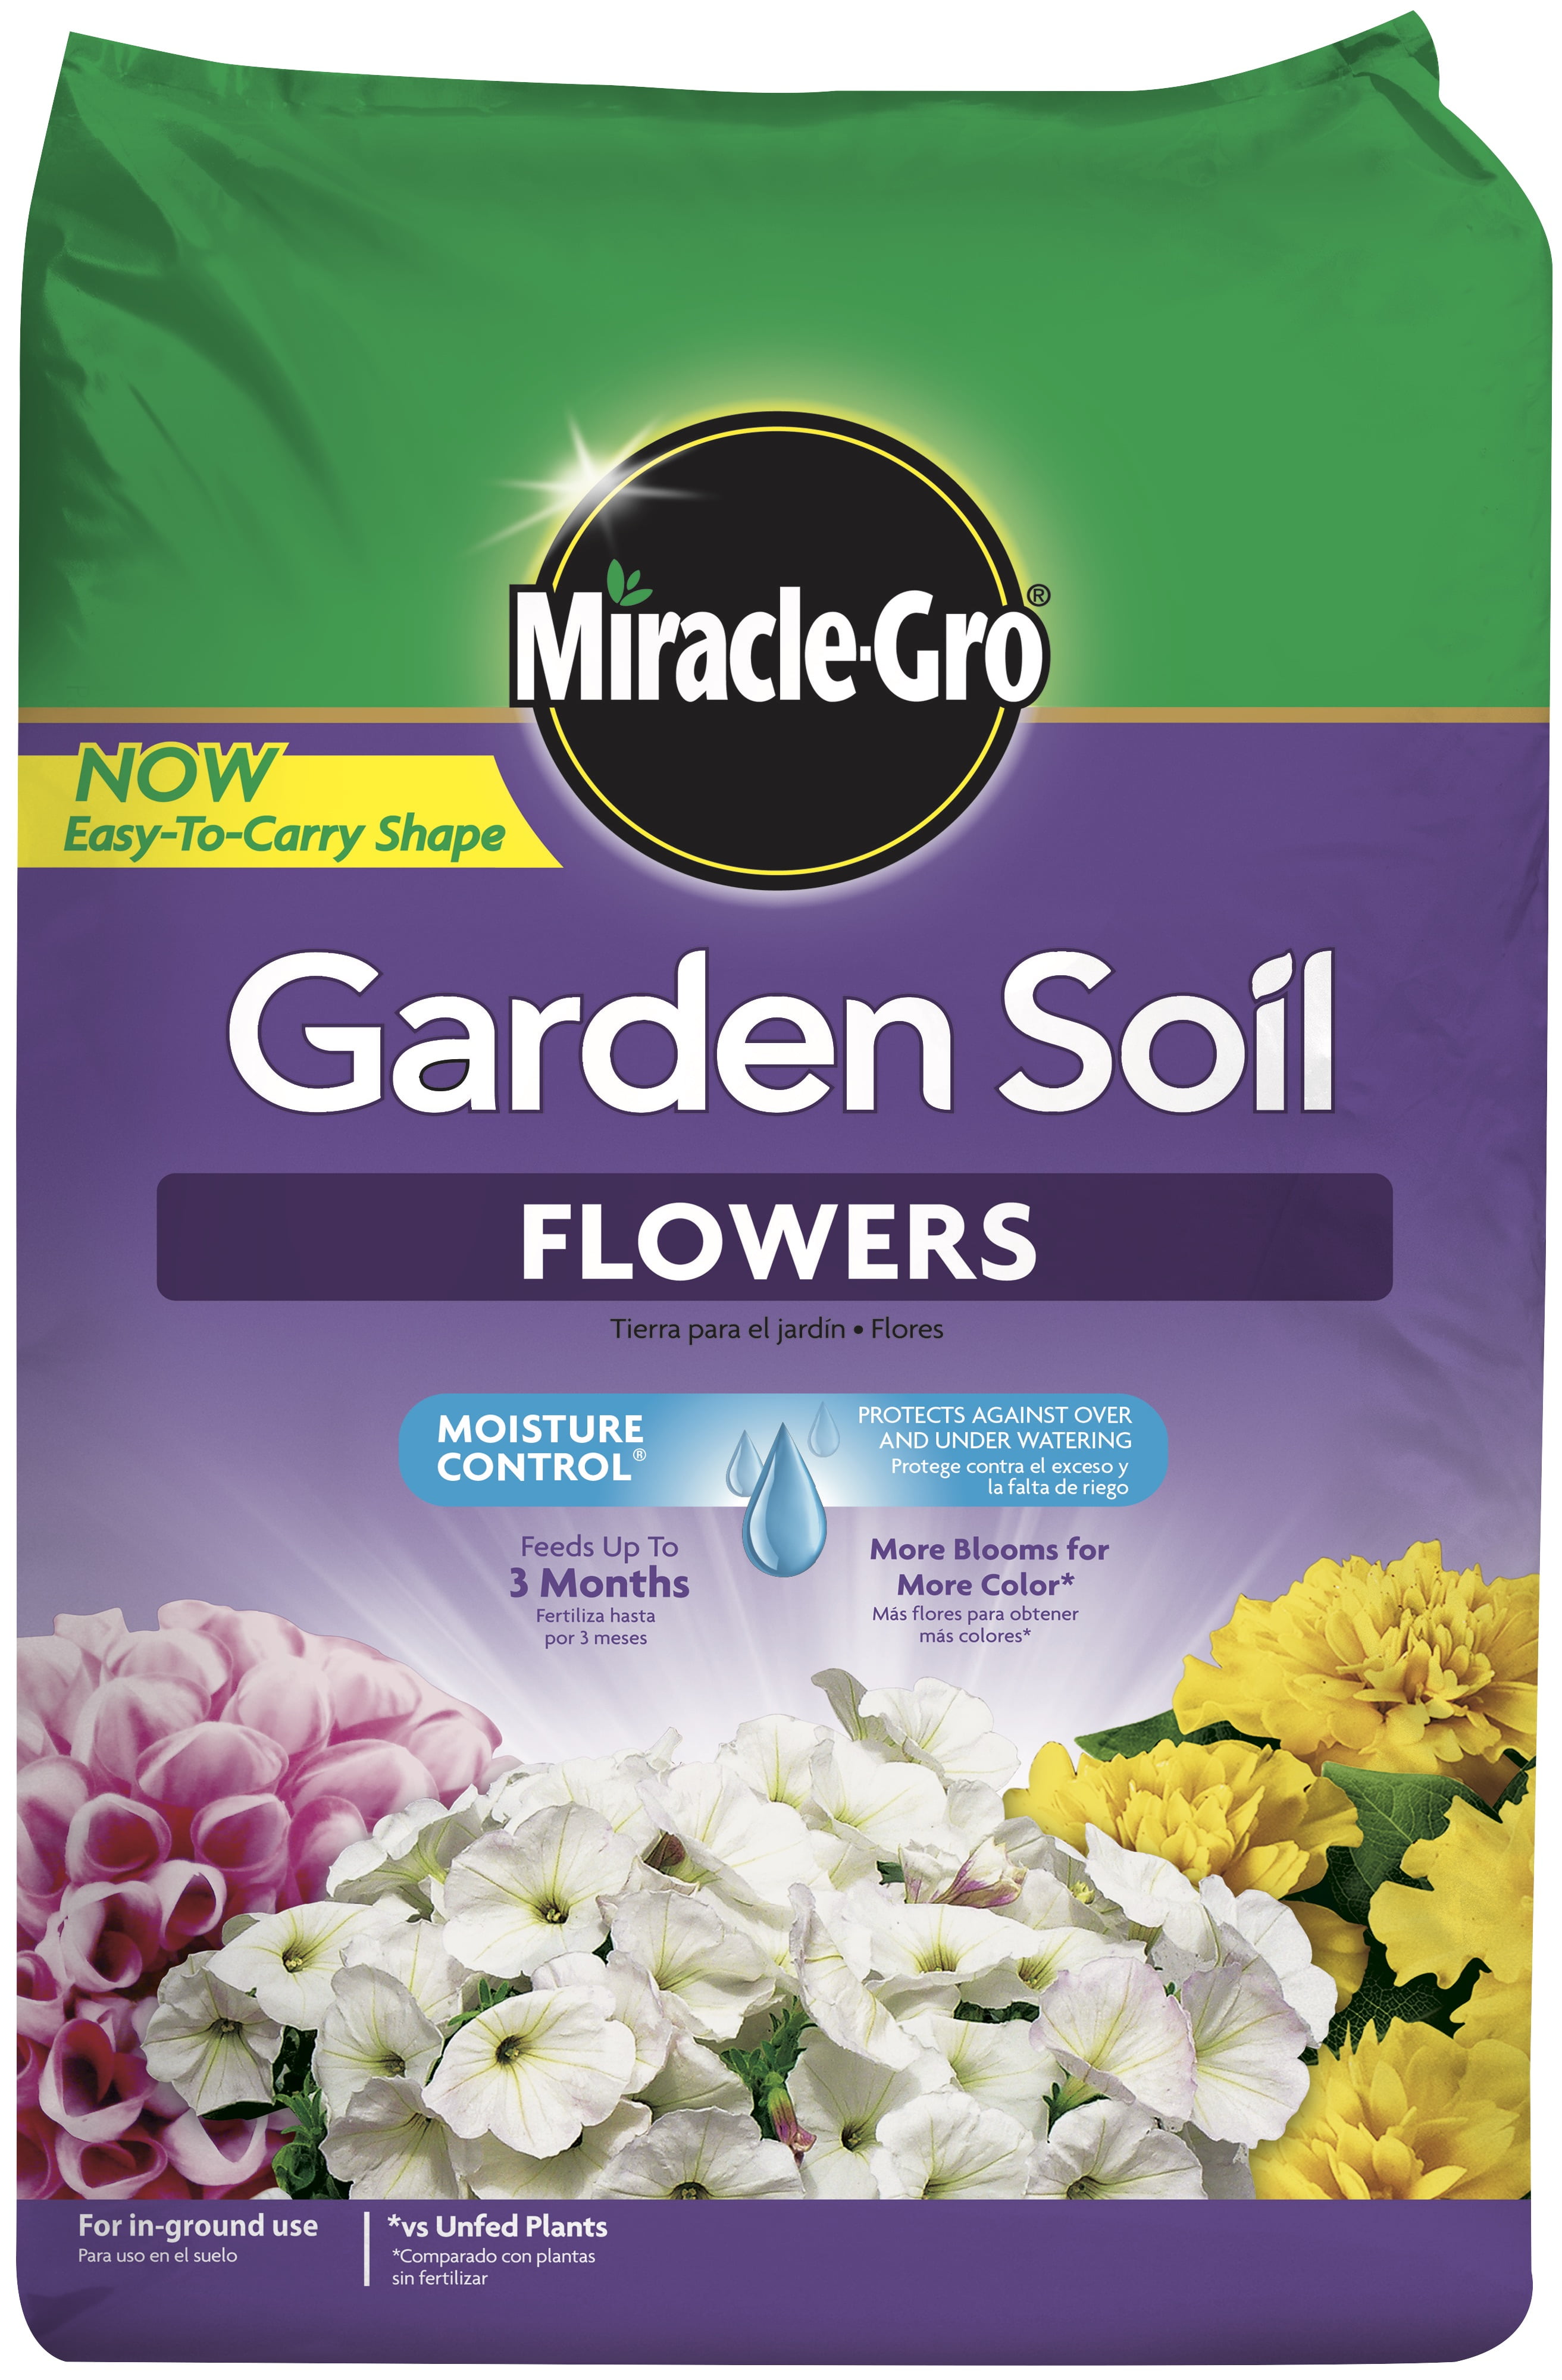 Miracle-gro garden soil for flowers &